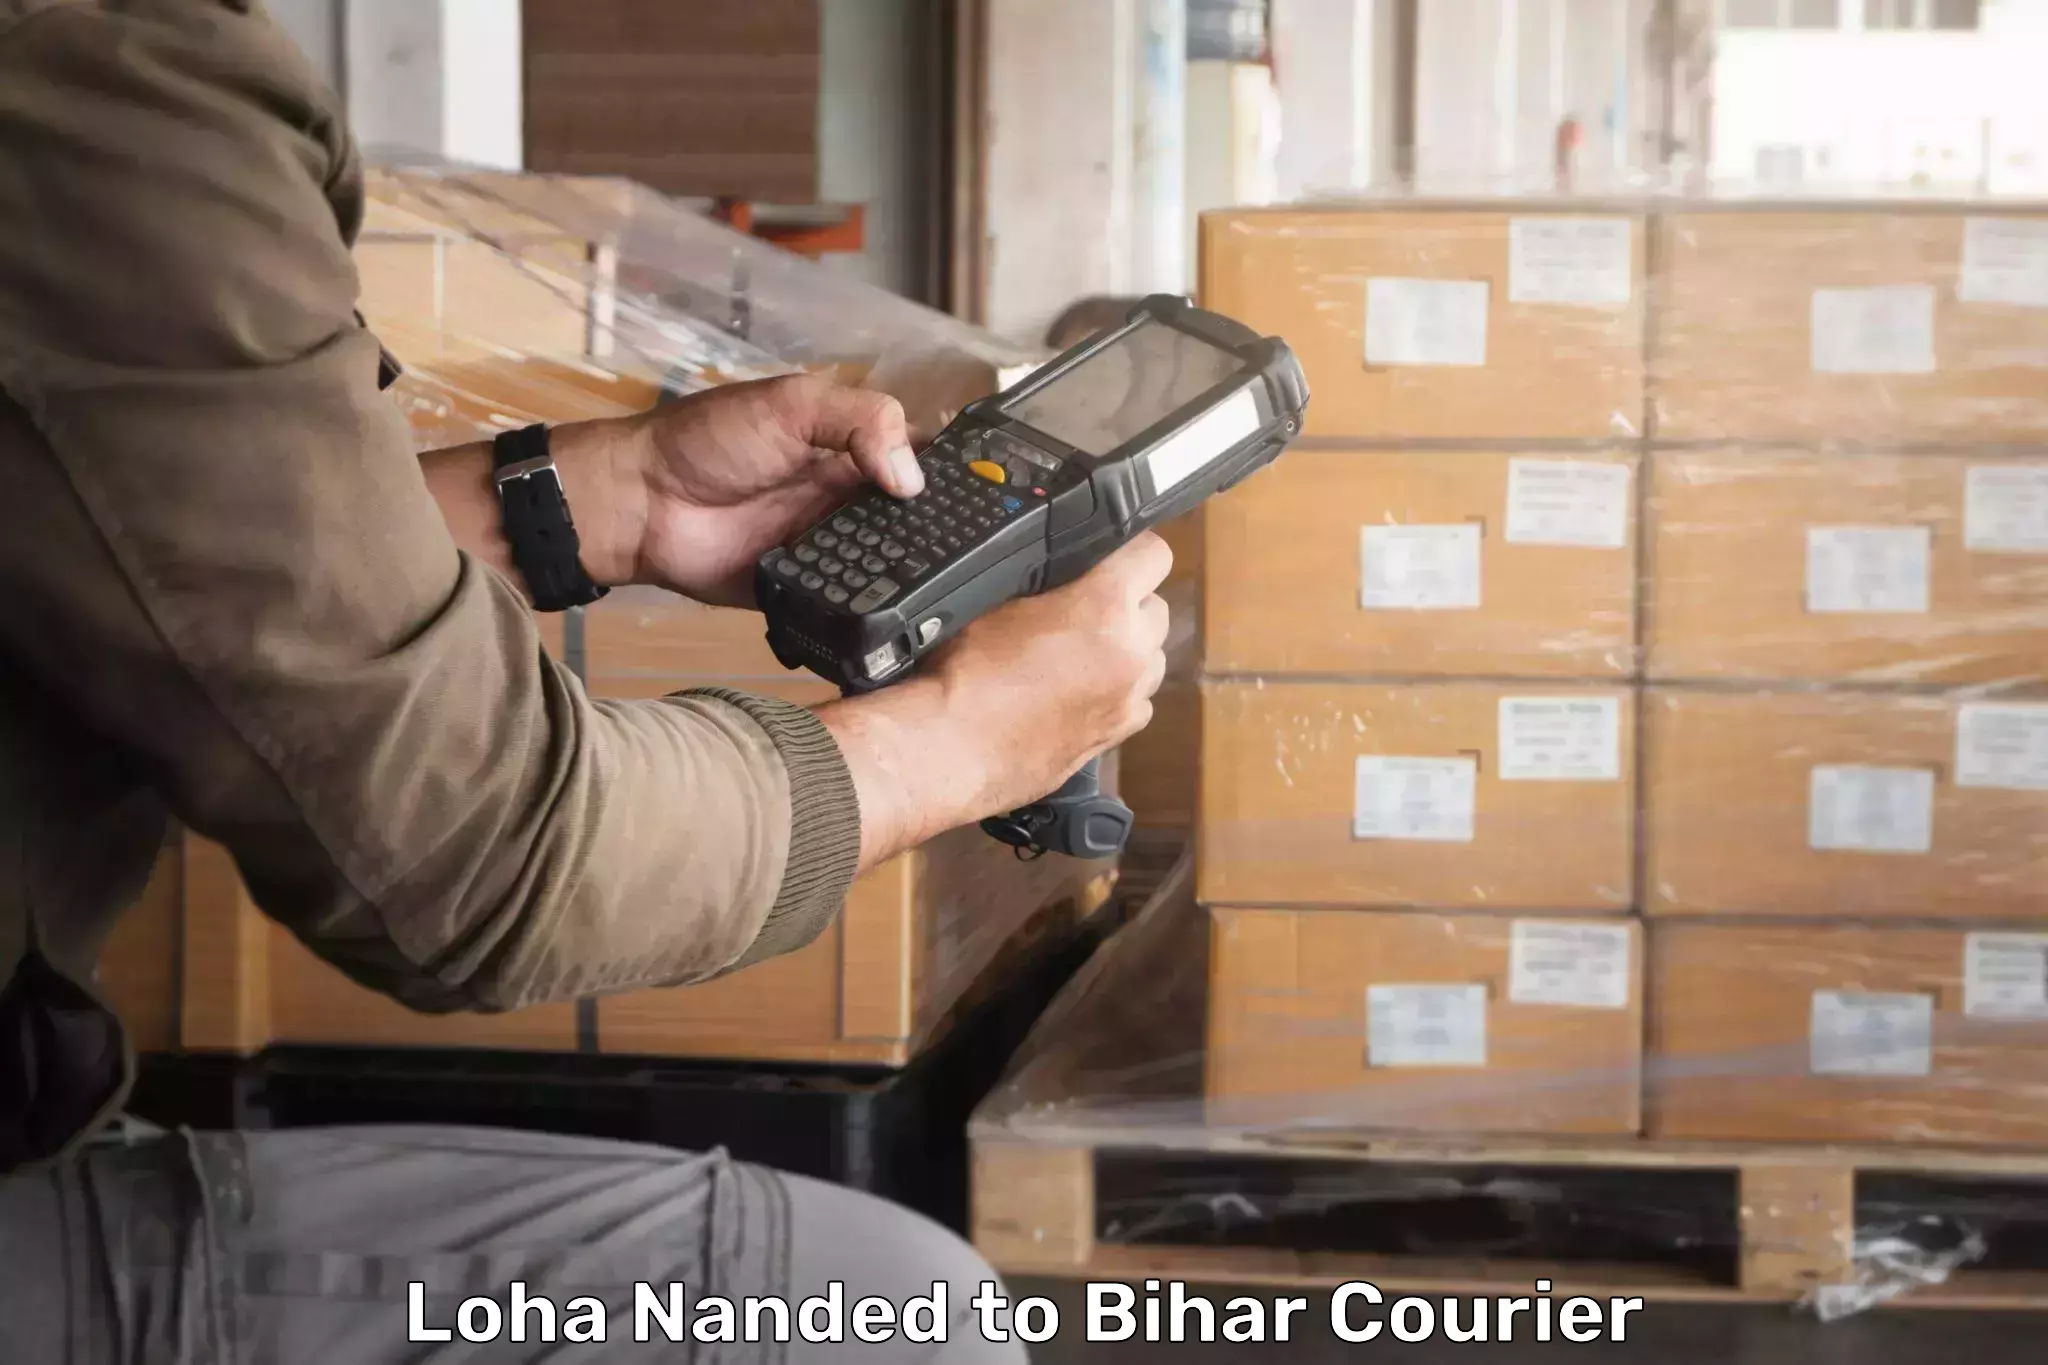 Comprehensive shipping network Loha Nanded to Saraiya